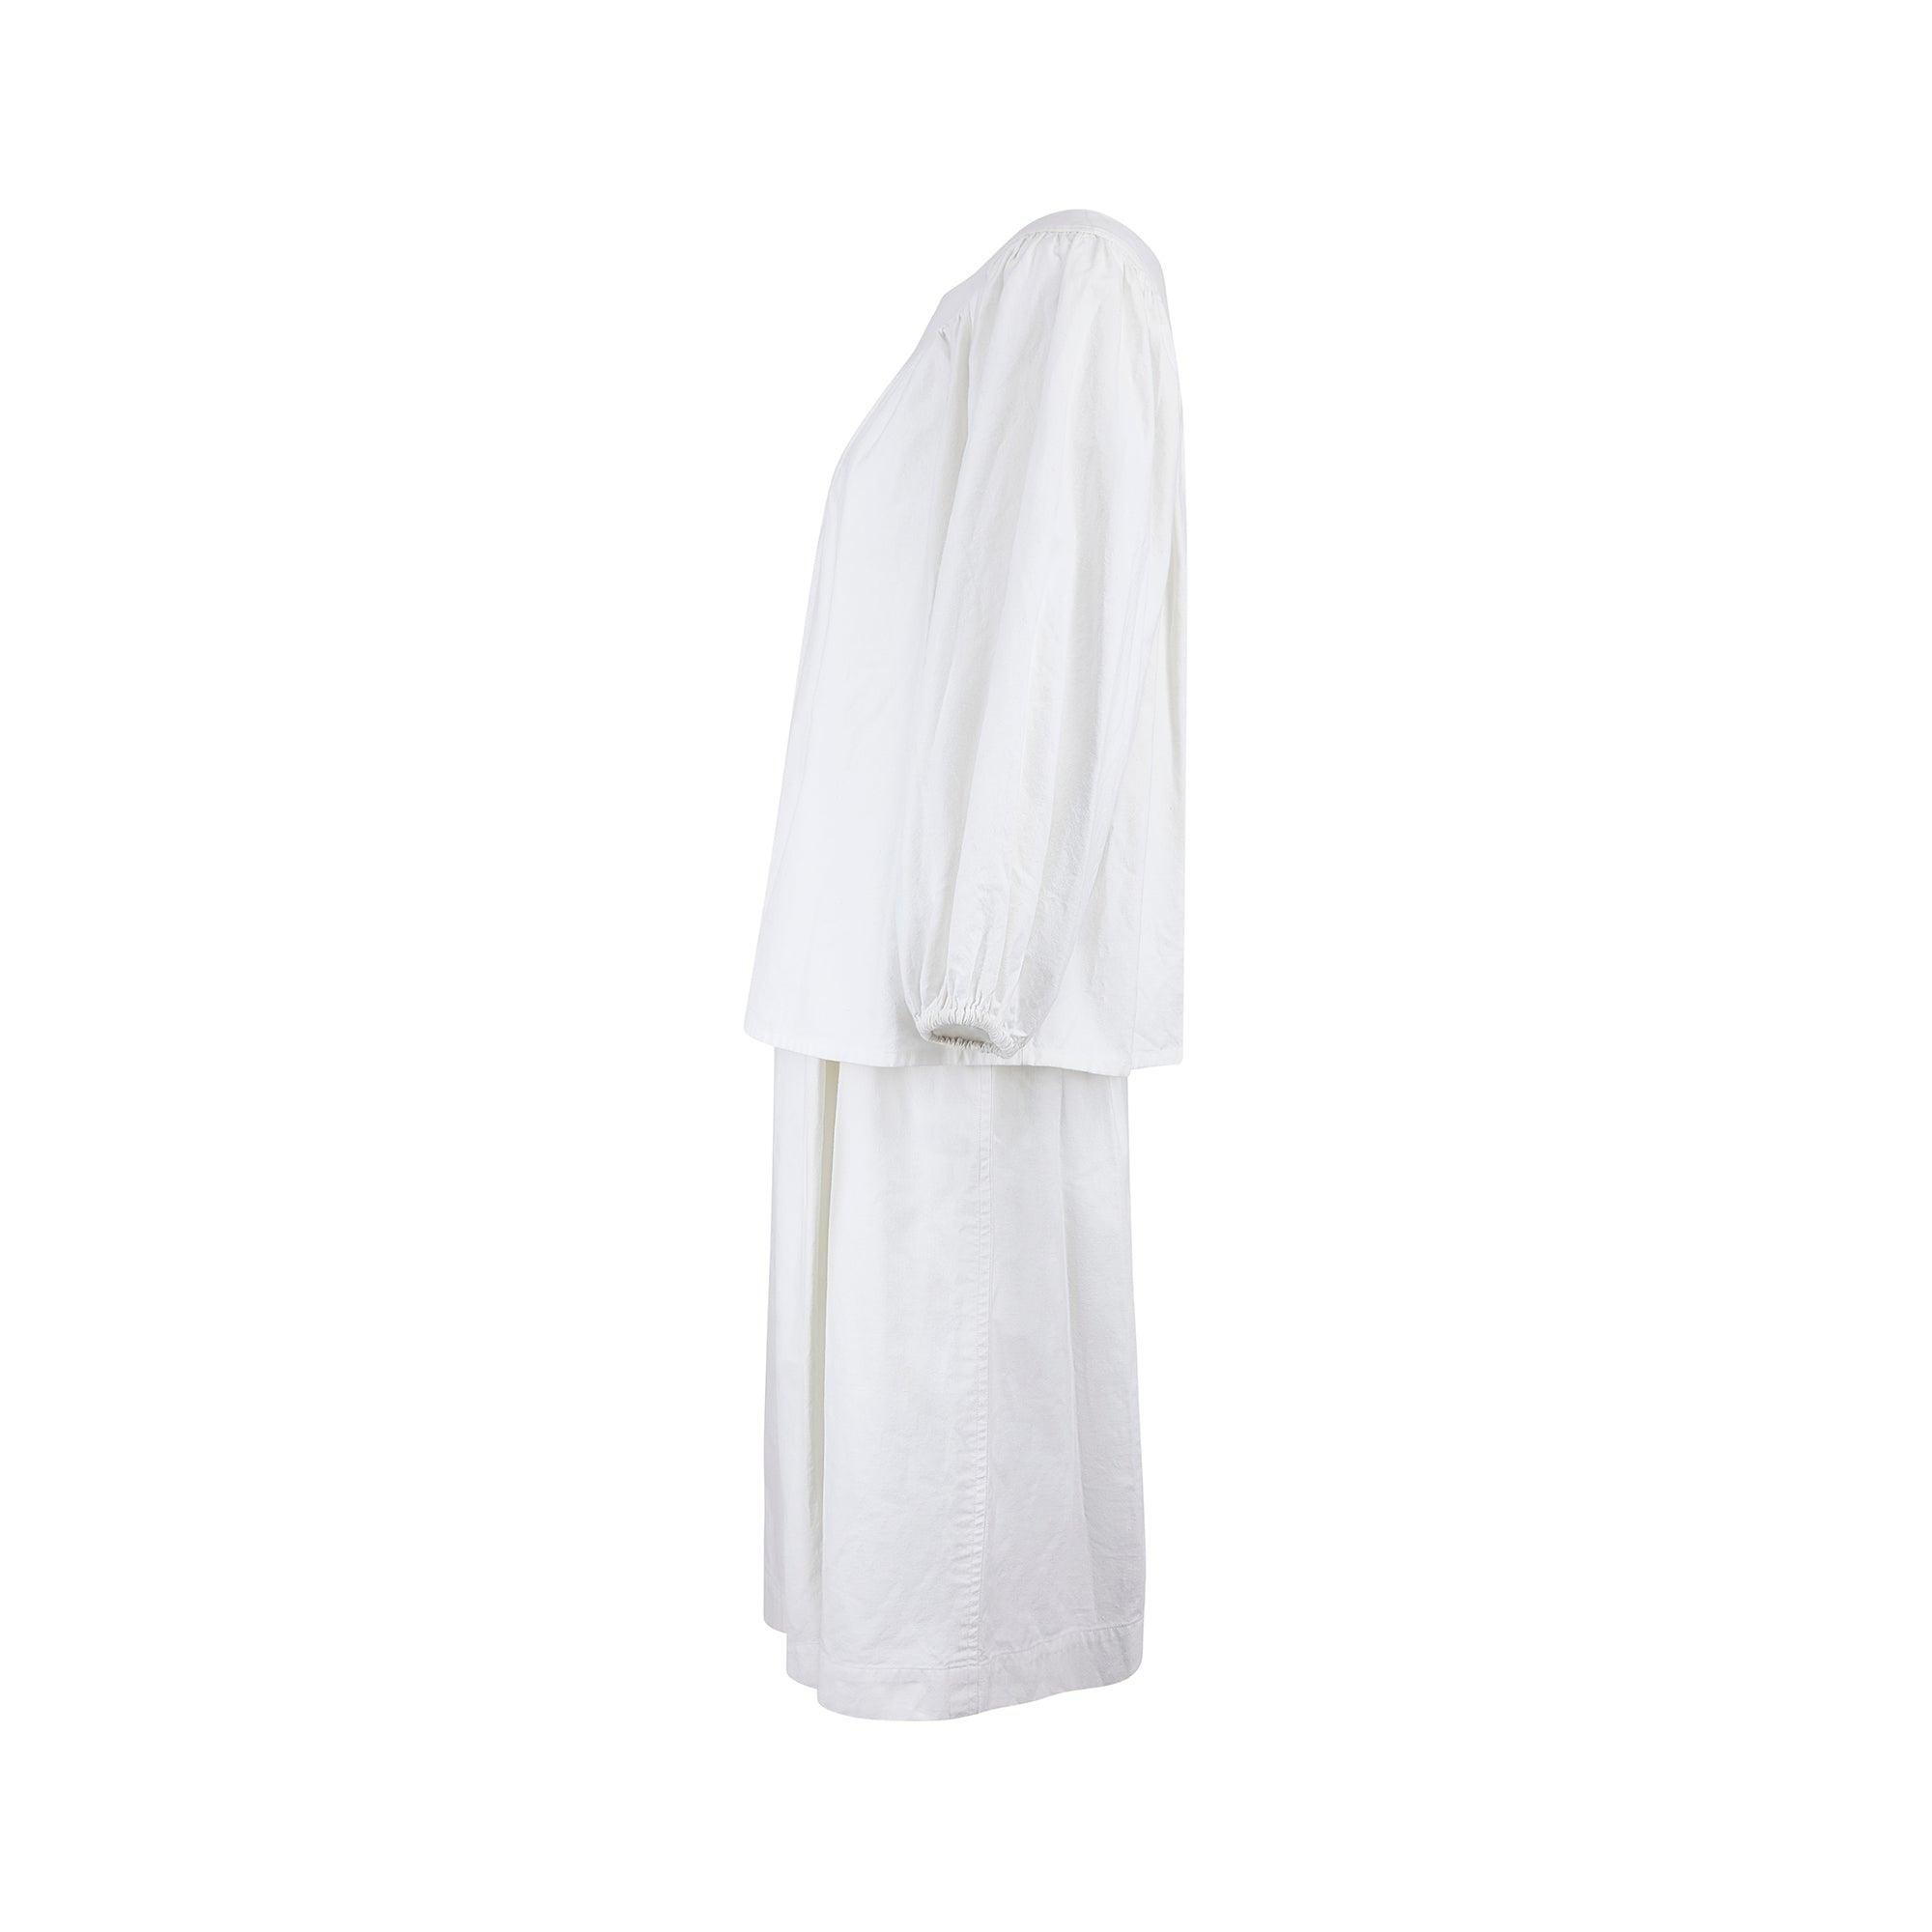 Cet ensemble d'été classique en coton blanc est issu de la collection de prêt-à-porter printemps-été 1975 d'Yves Saint Laurent. Le haut a des manches ballons et une coupe ample et floue. L'encolure large et élégante est une silhouette classique des